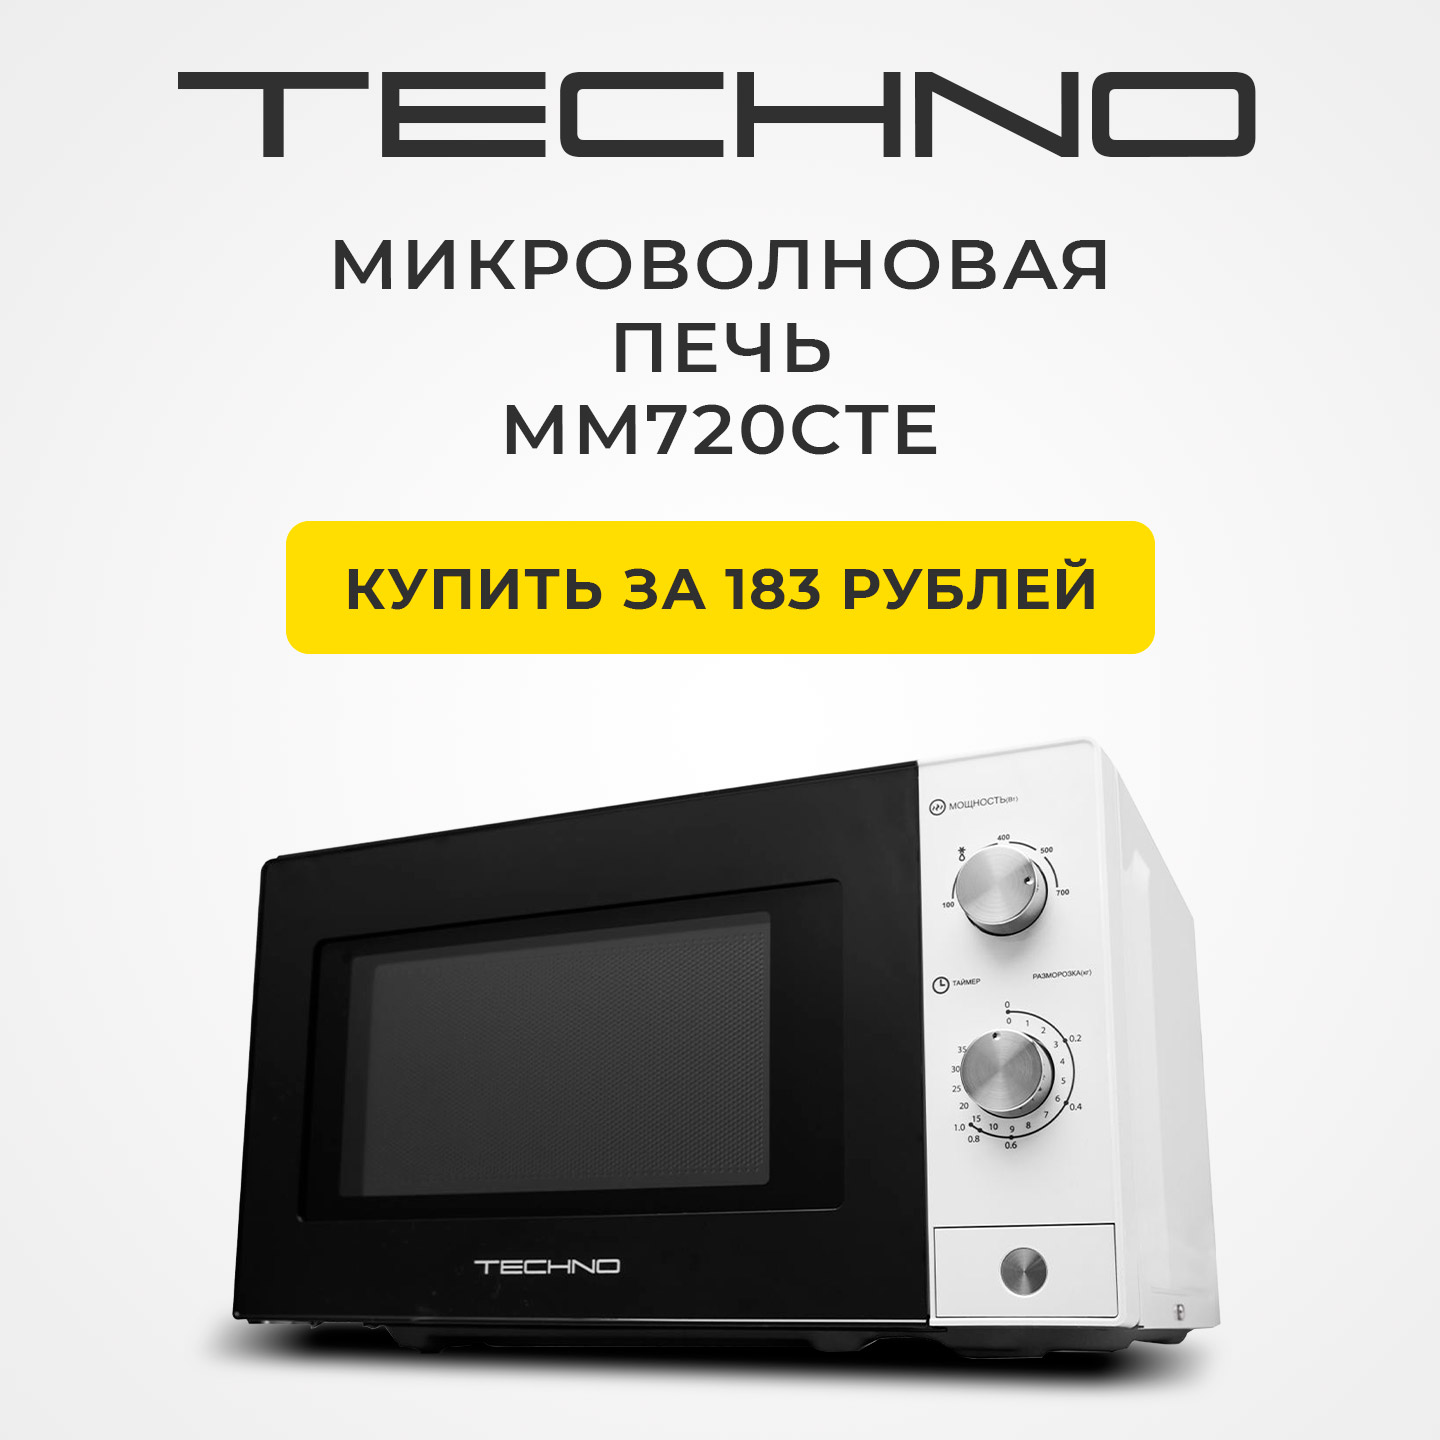 Микроволновая печь TECHNO MM720CTE